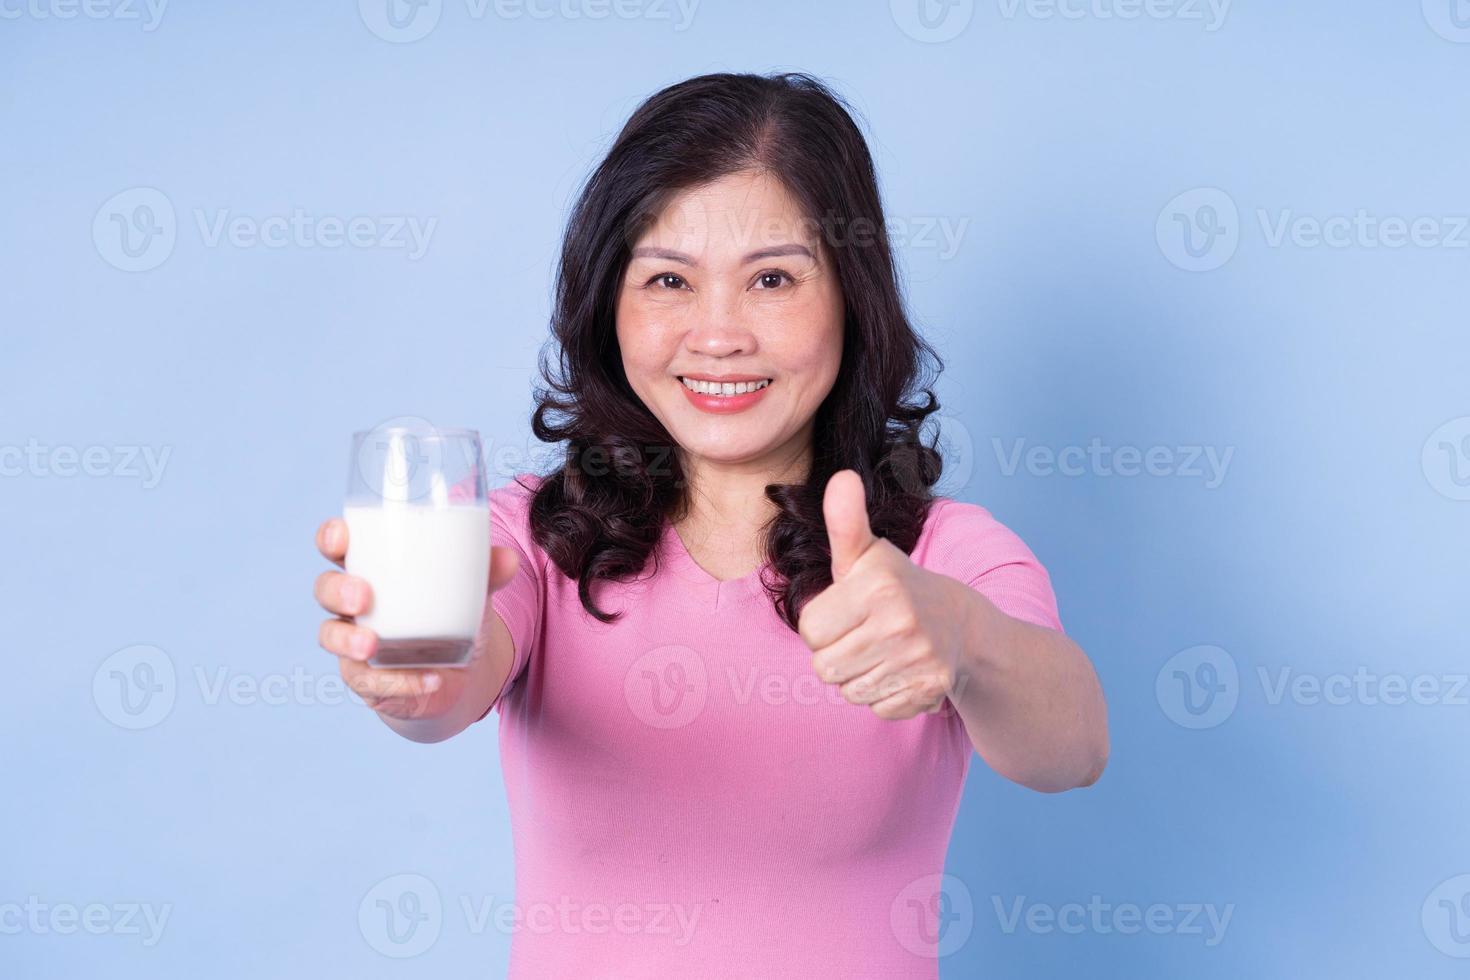 afbeelding van een Aziatische vrouw van middelbare leeftijd die melk drinkt op een blauwe achtergrond foto